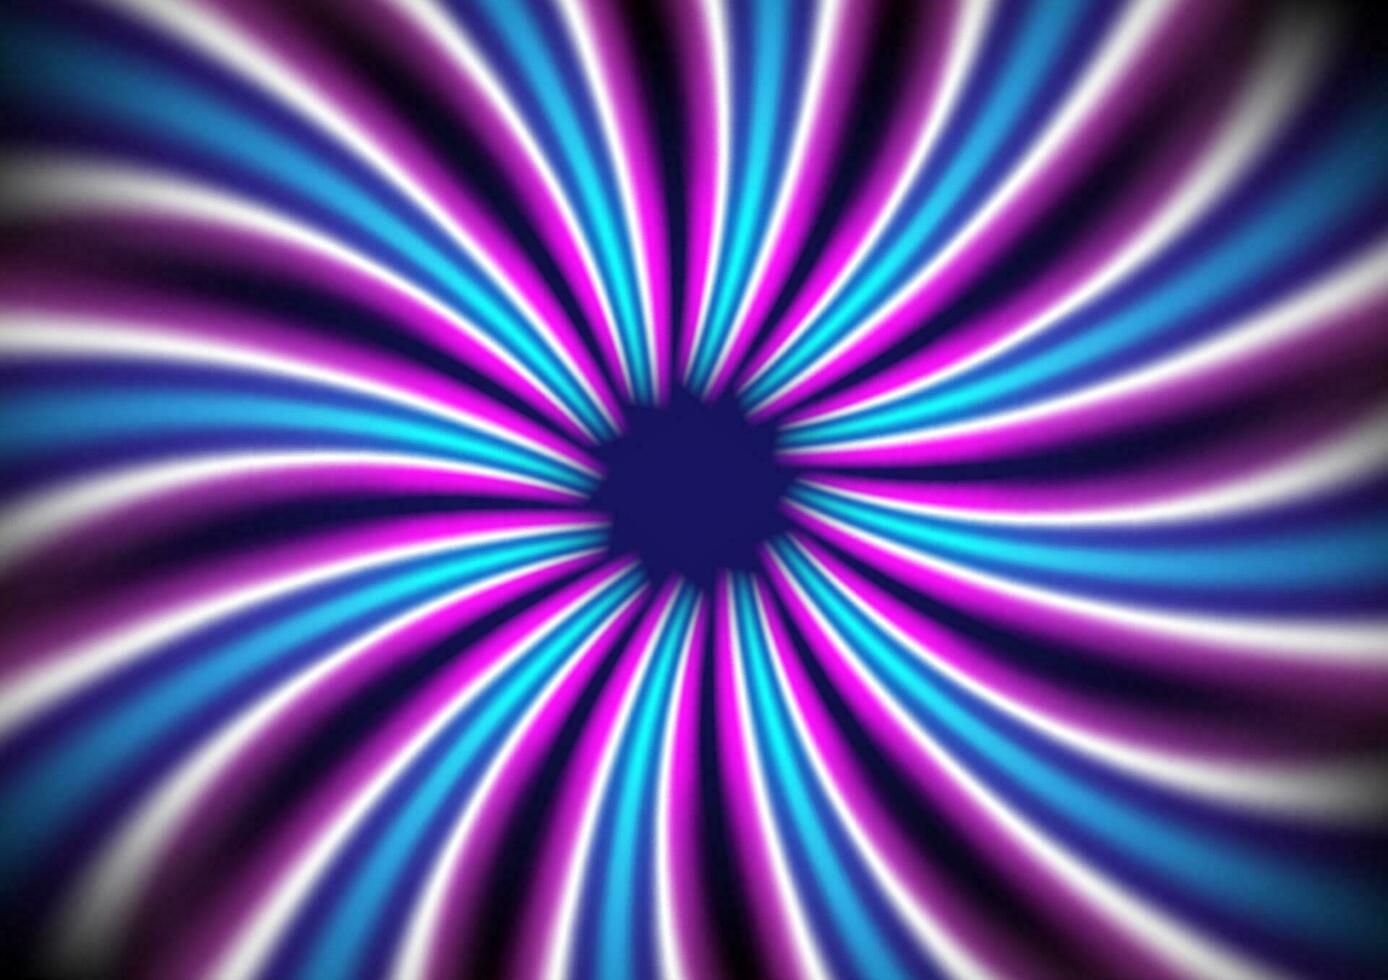 abstract wervelende radiaal patroon achtergrond van roze, blauw en wit strepen. schroef zonnestraal vector achtergrond